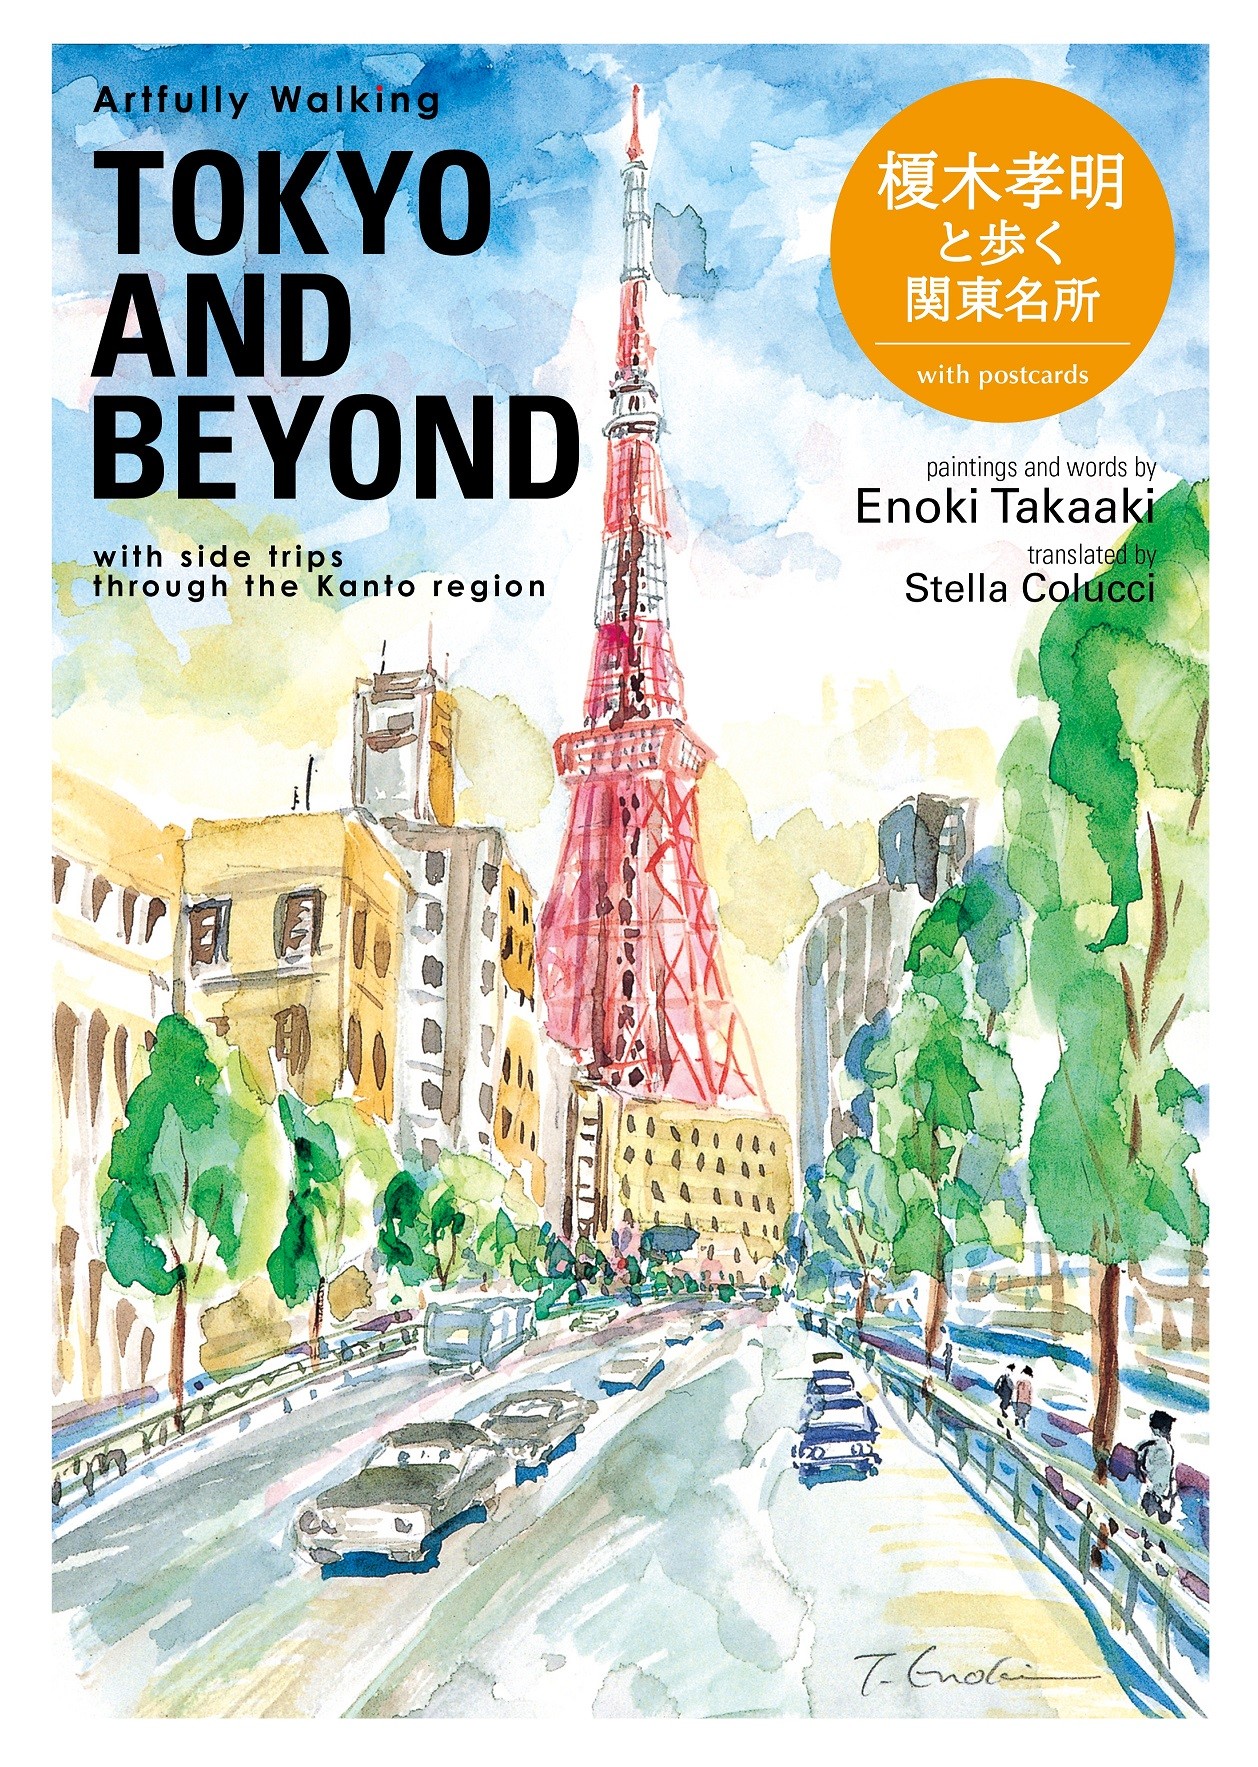 Artfully Walking Tokyo & Beyondの商品画像